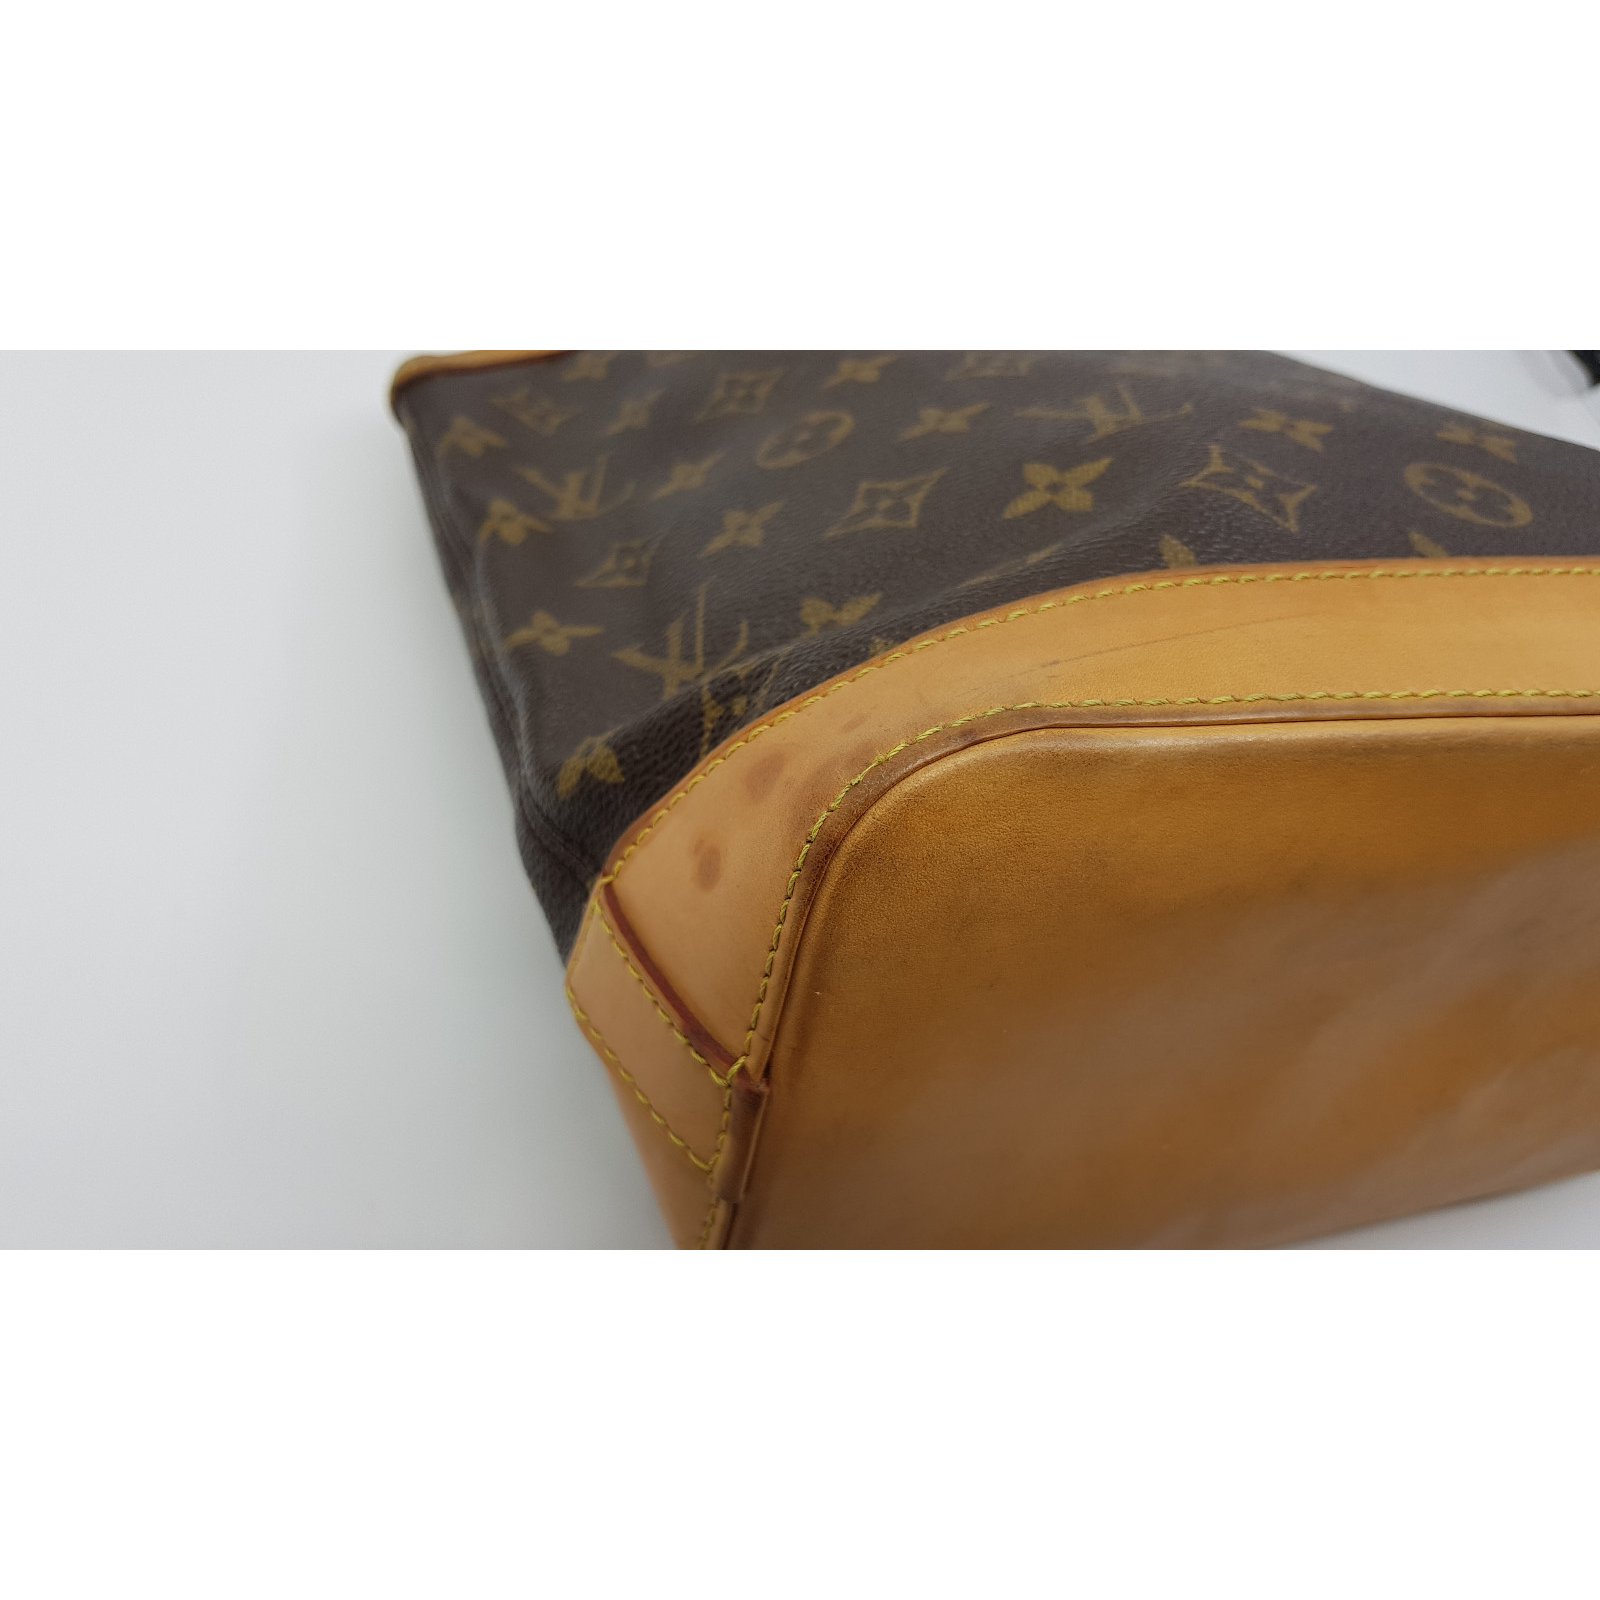 Louis Vuitton - Lockit PM M40102 Bag - Catawiki